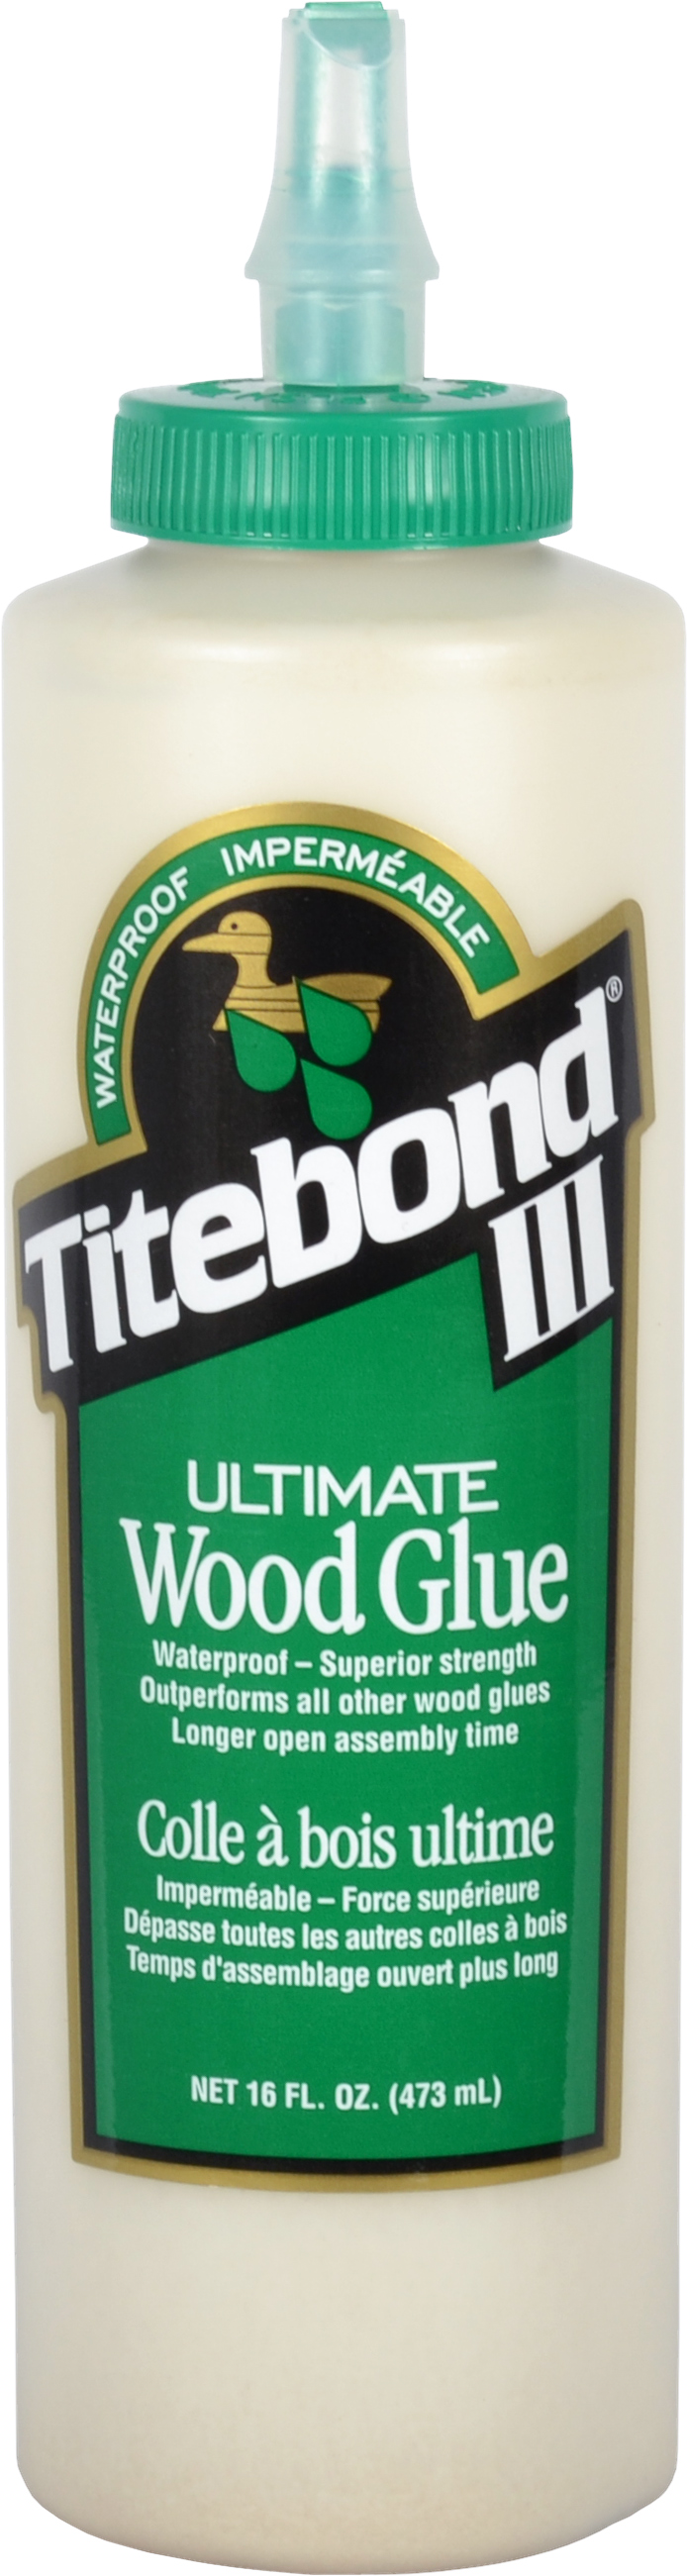 Titebond III Ultimate Wood Glue - Titebond - Ardec - Finishing